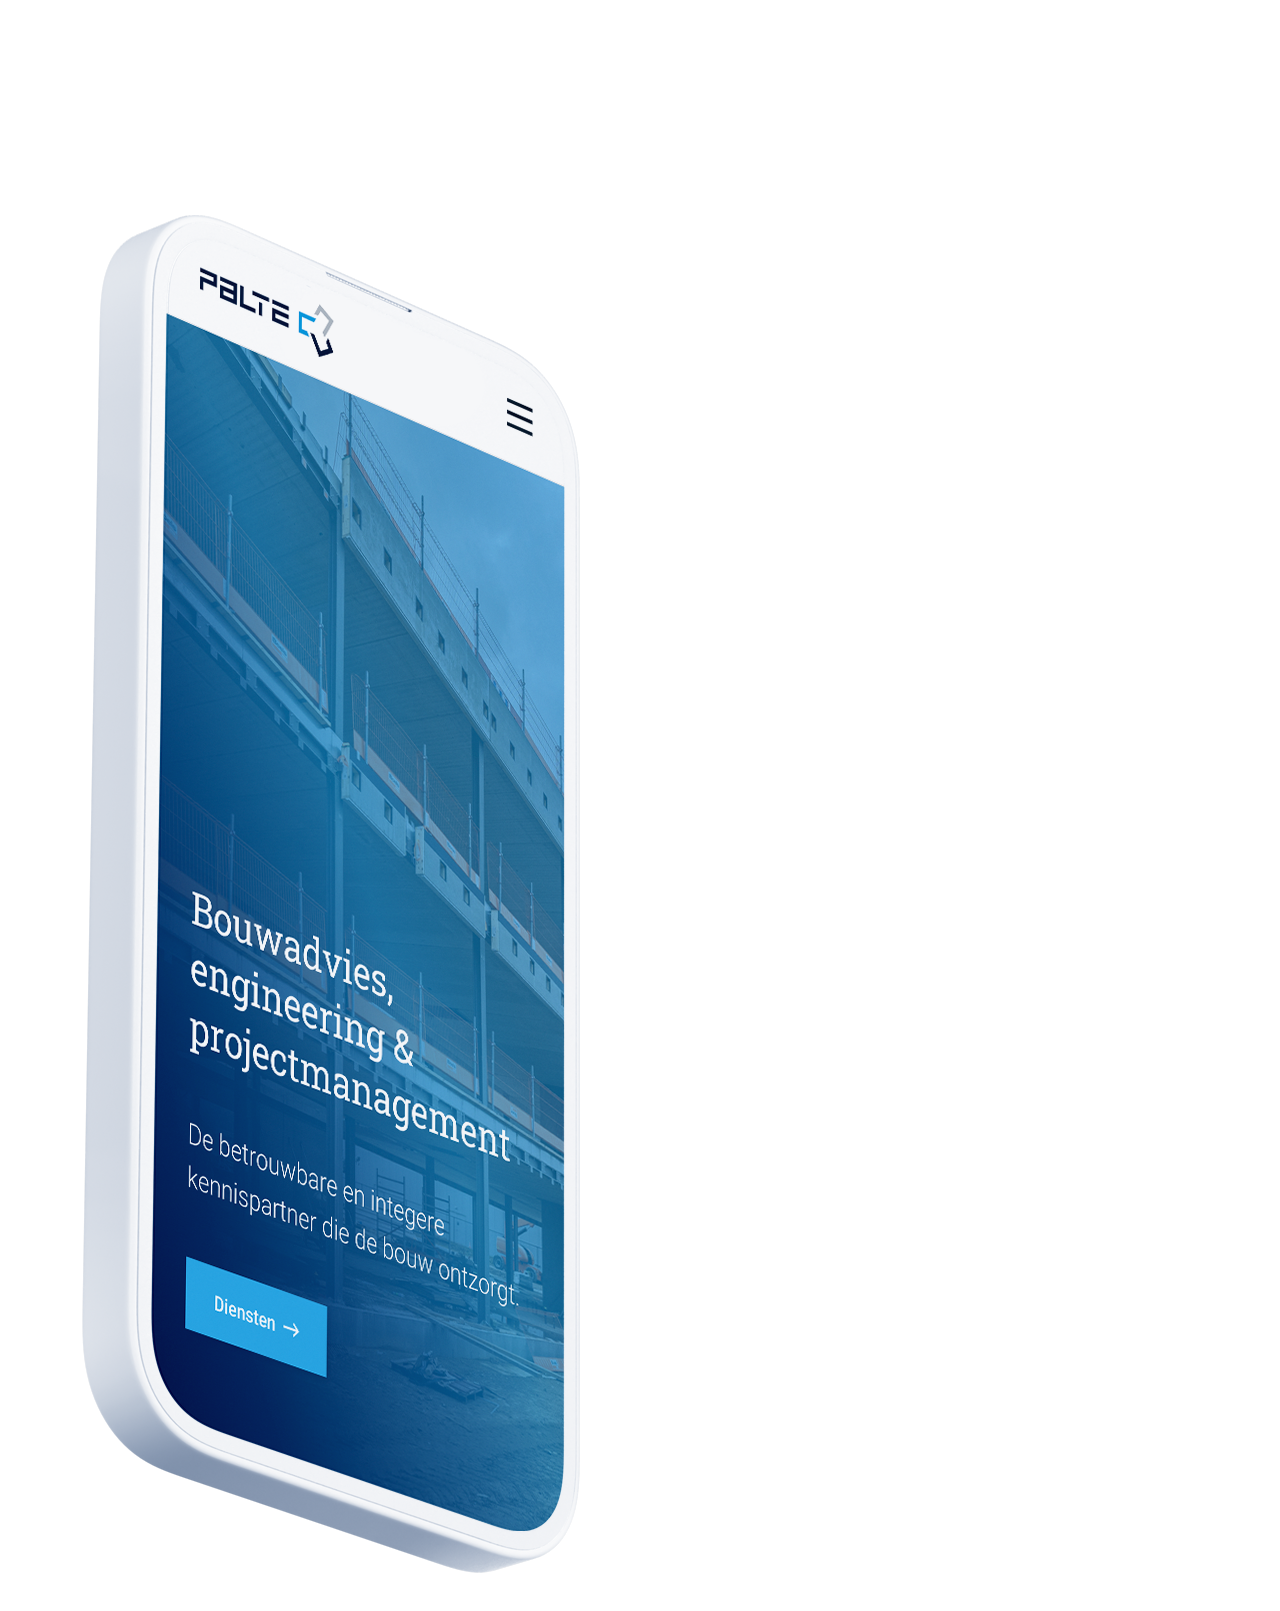 Een smartphone met daarop een webpagina voor "Bouwadvies, engineering & projectmanagement" van Pailte B.V.